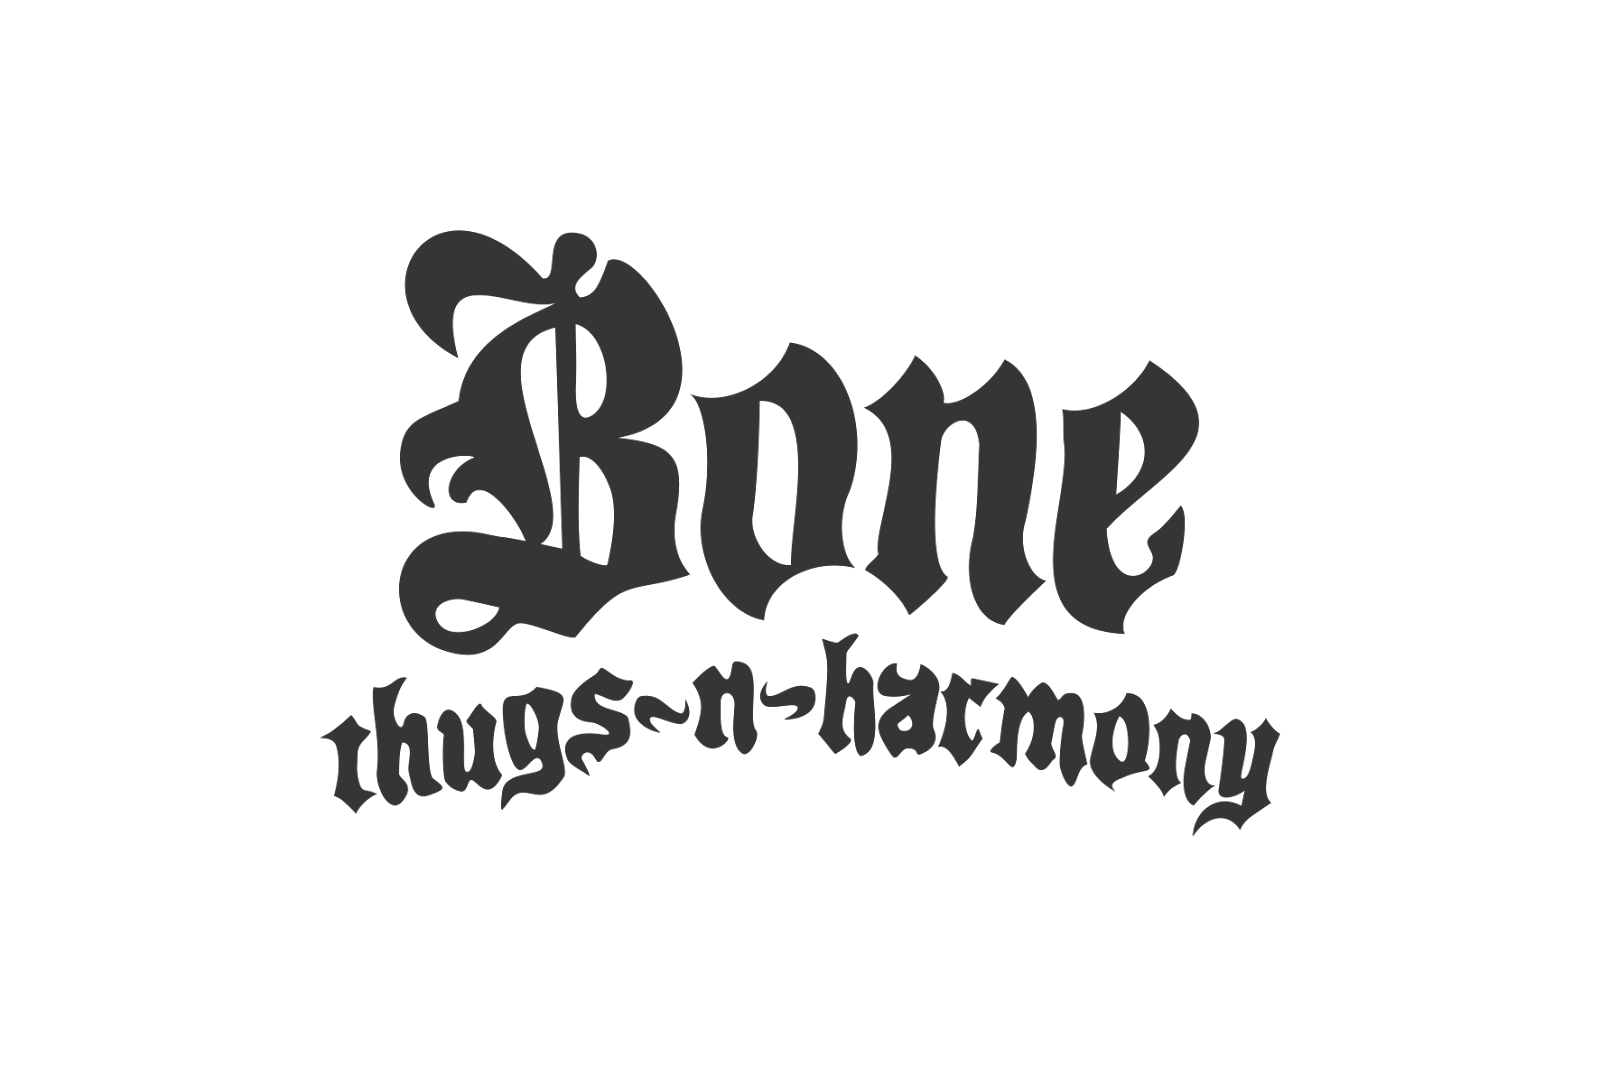 Bone Thugs-n-Harmony. Bone Thugs n Harmony logo. Bone Thugs -n - Harmony Rapper. Bones лого. Bone n thugs